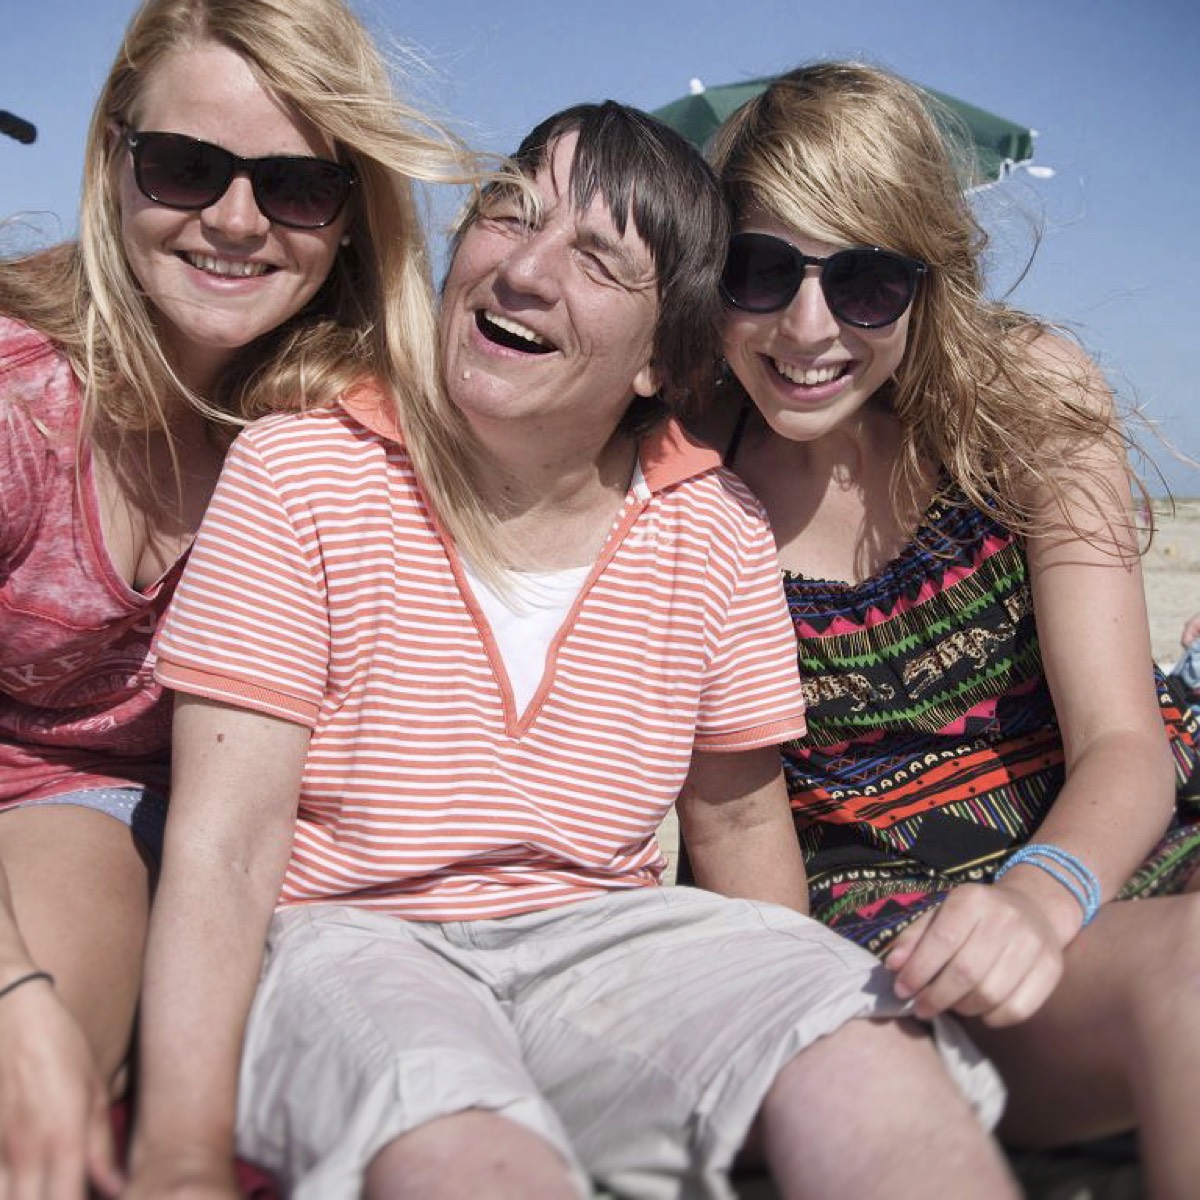 Auf dem 1. Bild sieht man zwei Frauen ohne Beeinträchtigung und eine Frau mit Beeinträchtigung. Sie sitzen am Strand und lachen zusammen.